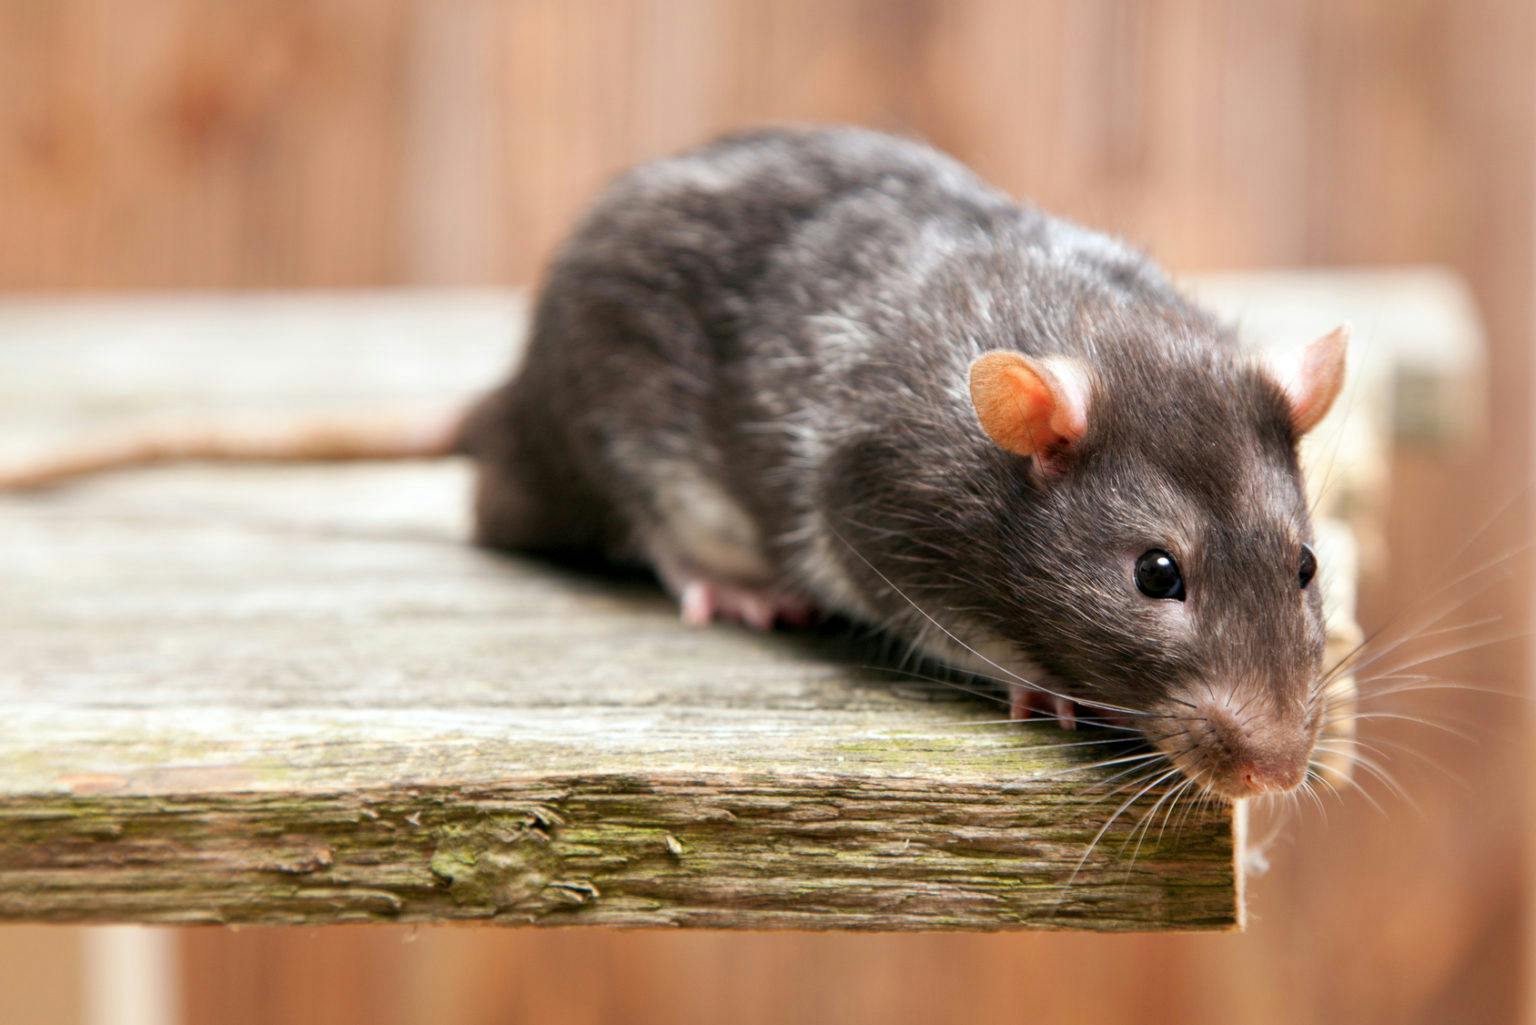 Comment tuer une souris ? Astuces et méthodes efficaces